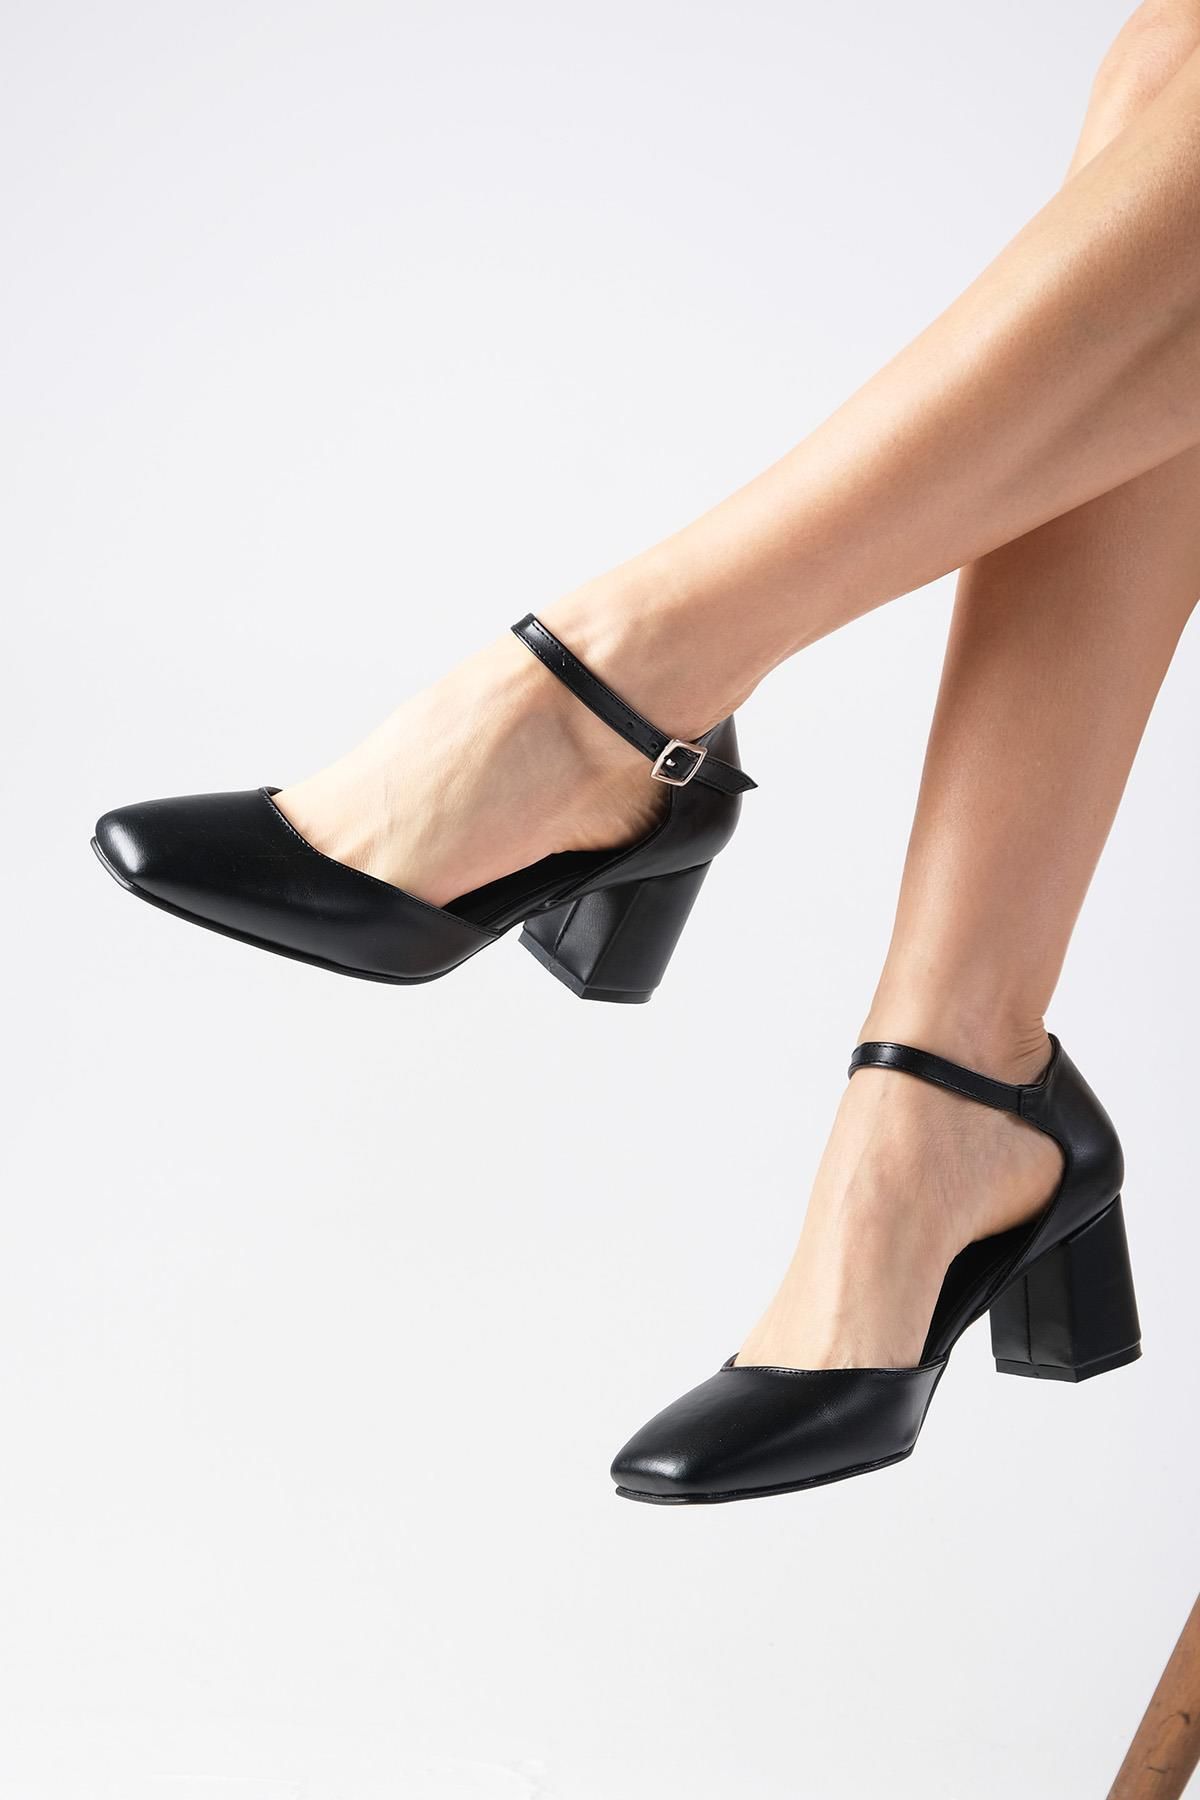 Mio Gusto Anna Siyah Renk Küt Burunlu Kalın Topuklu Bilek Bantlı Kadın Topuklu Ayakkabı